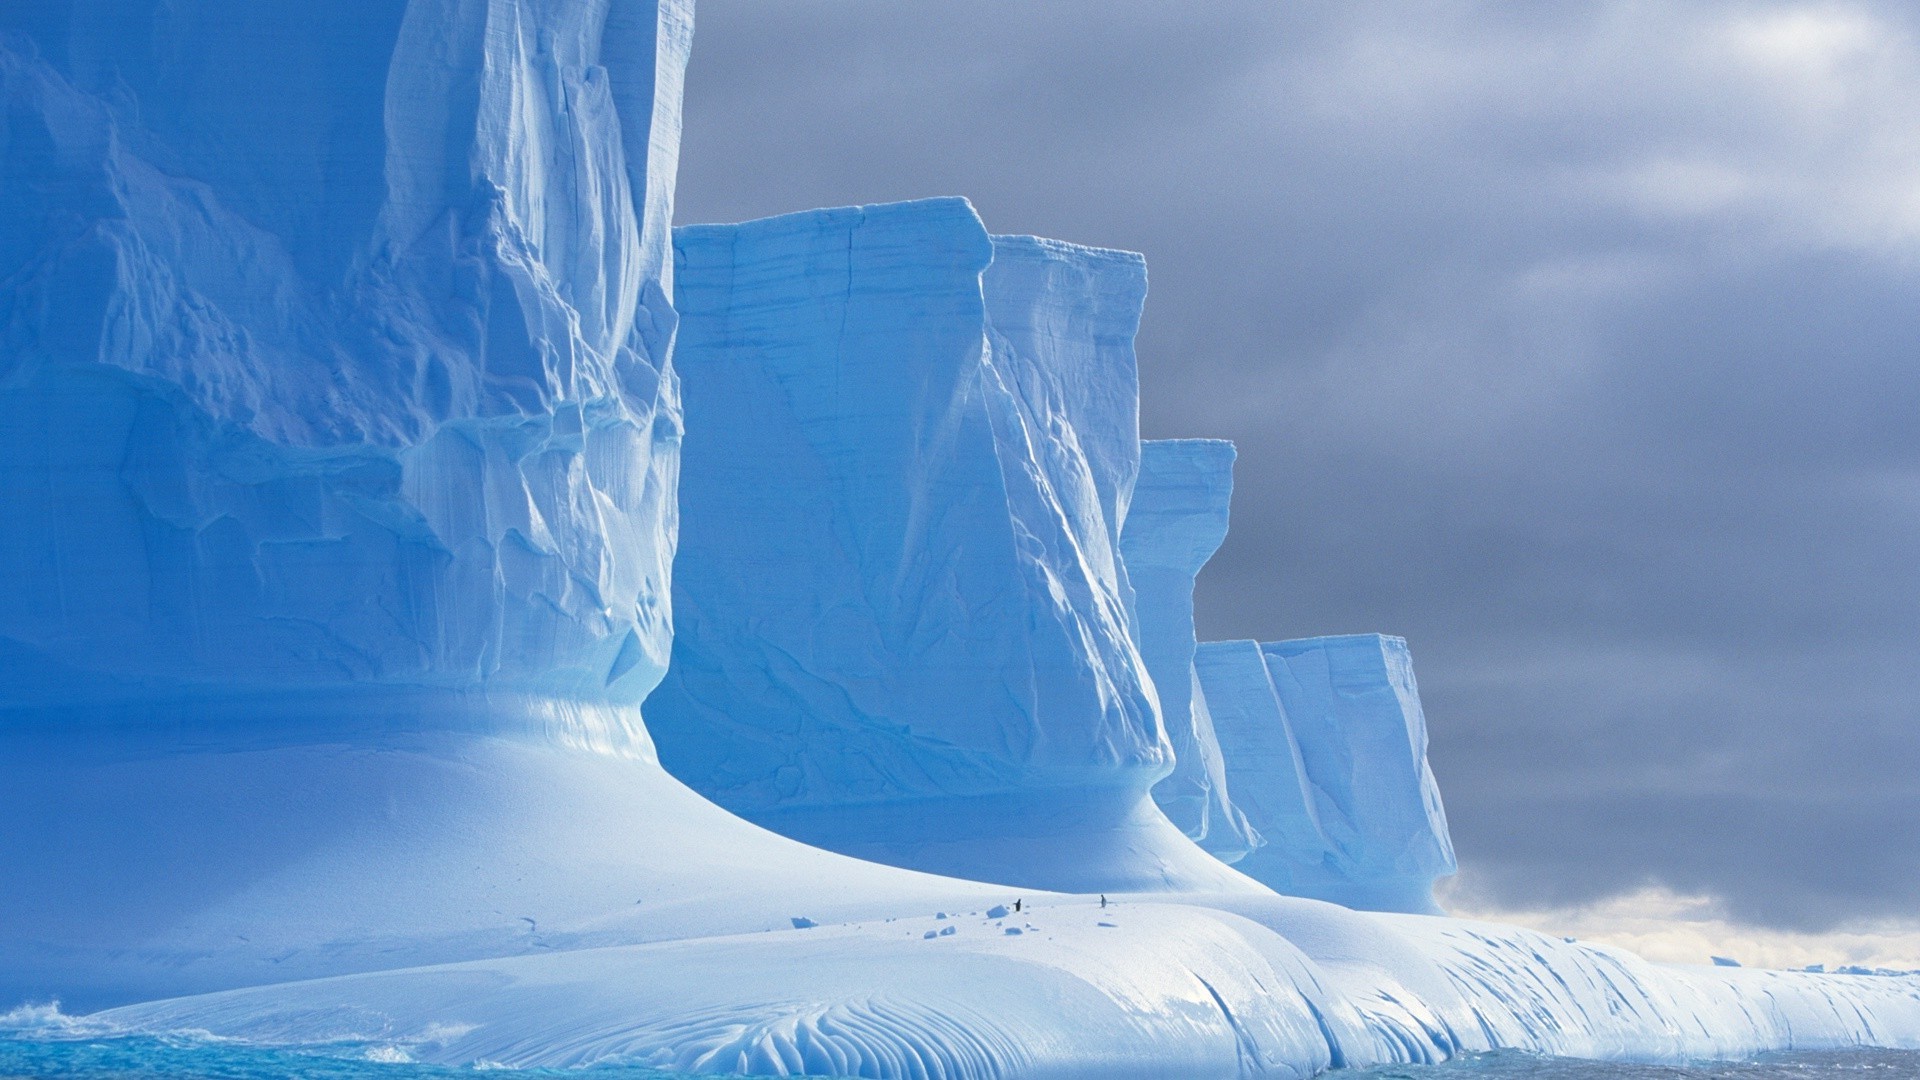 зима лед снег холодная природа замороженные мороз морозный пейзаж плавления айсберг небо на открытом воздухе ледник воды